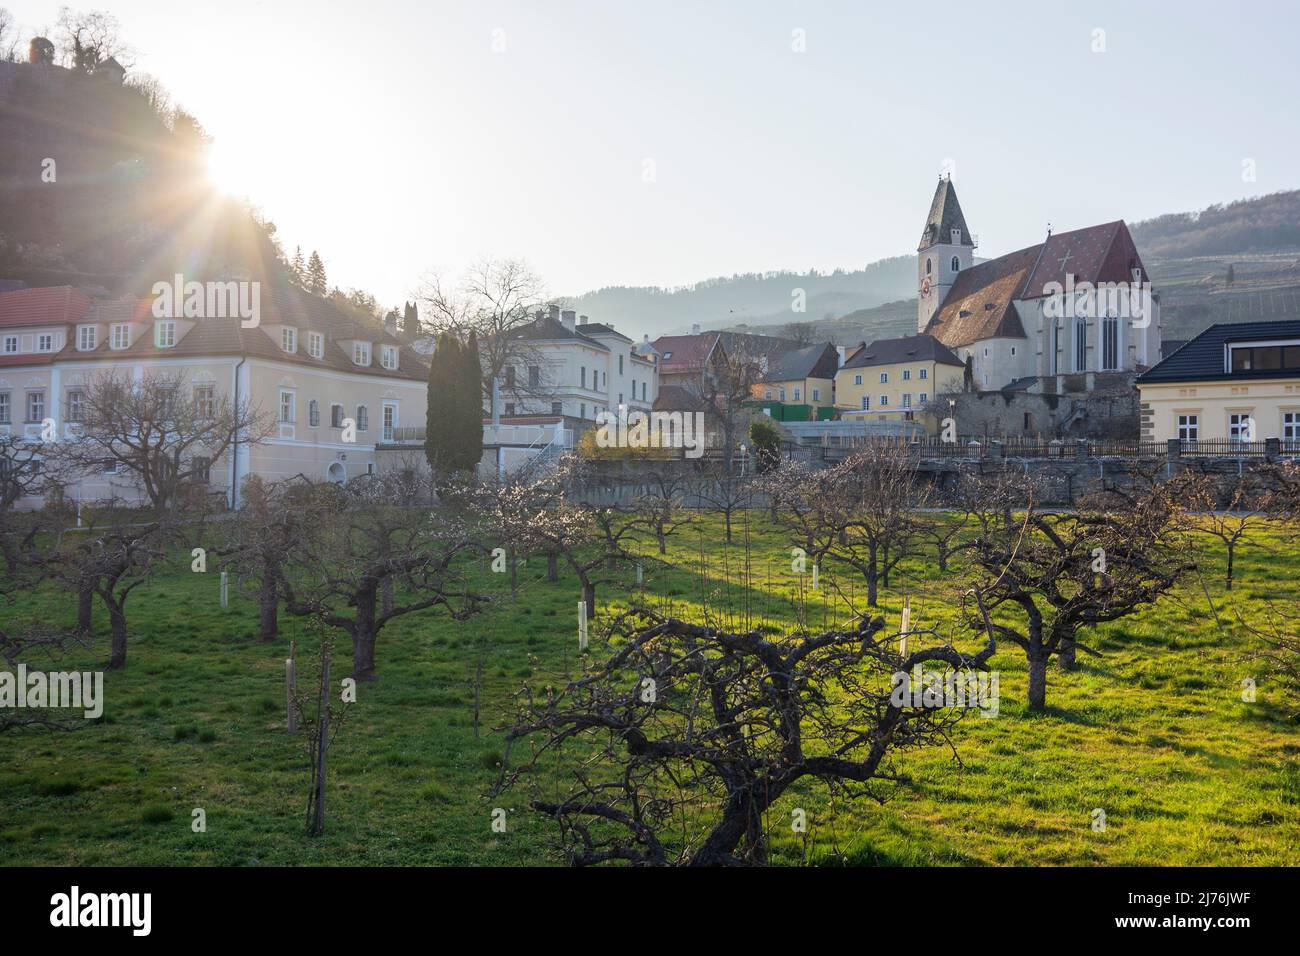 Spitz, chiesa Spitz, albicocche fiorite (Marille) nella regione di Wachau, bassa Austria, Austria Foto Stock